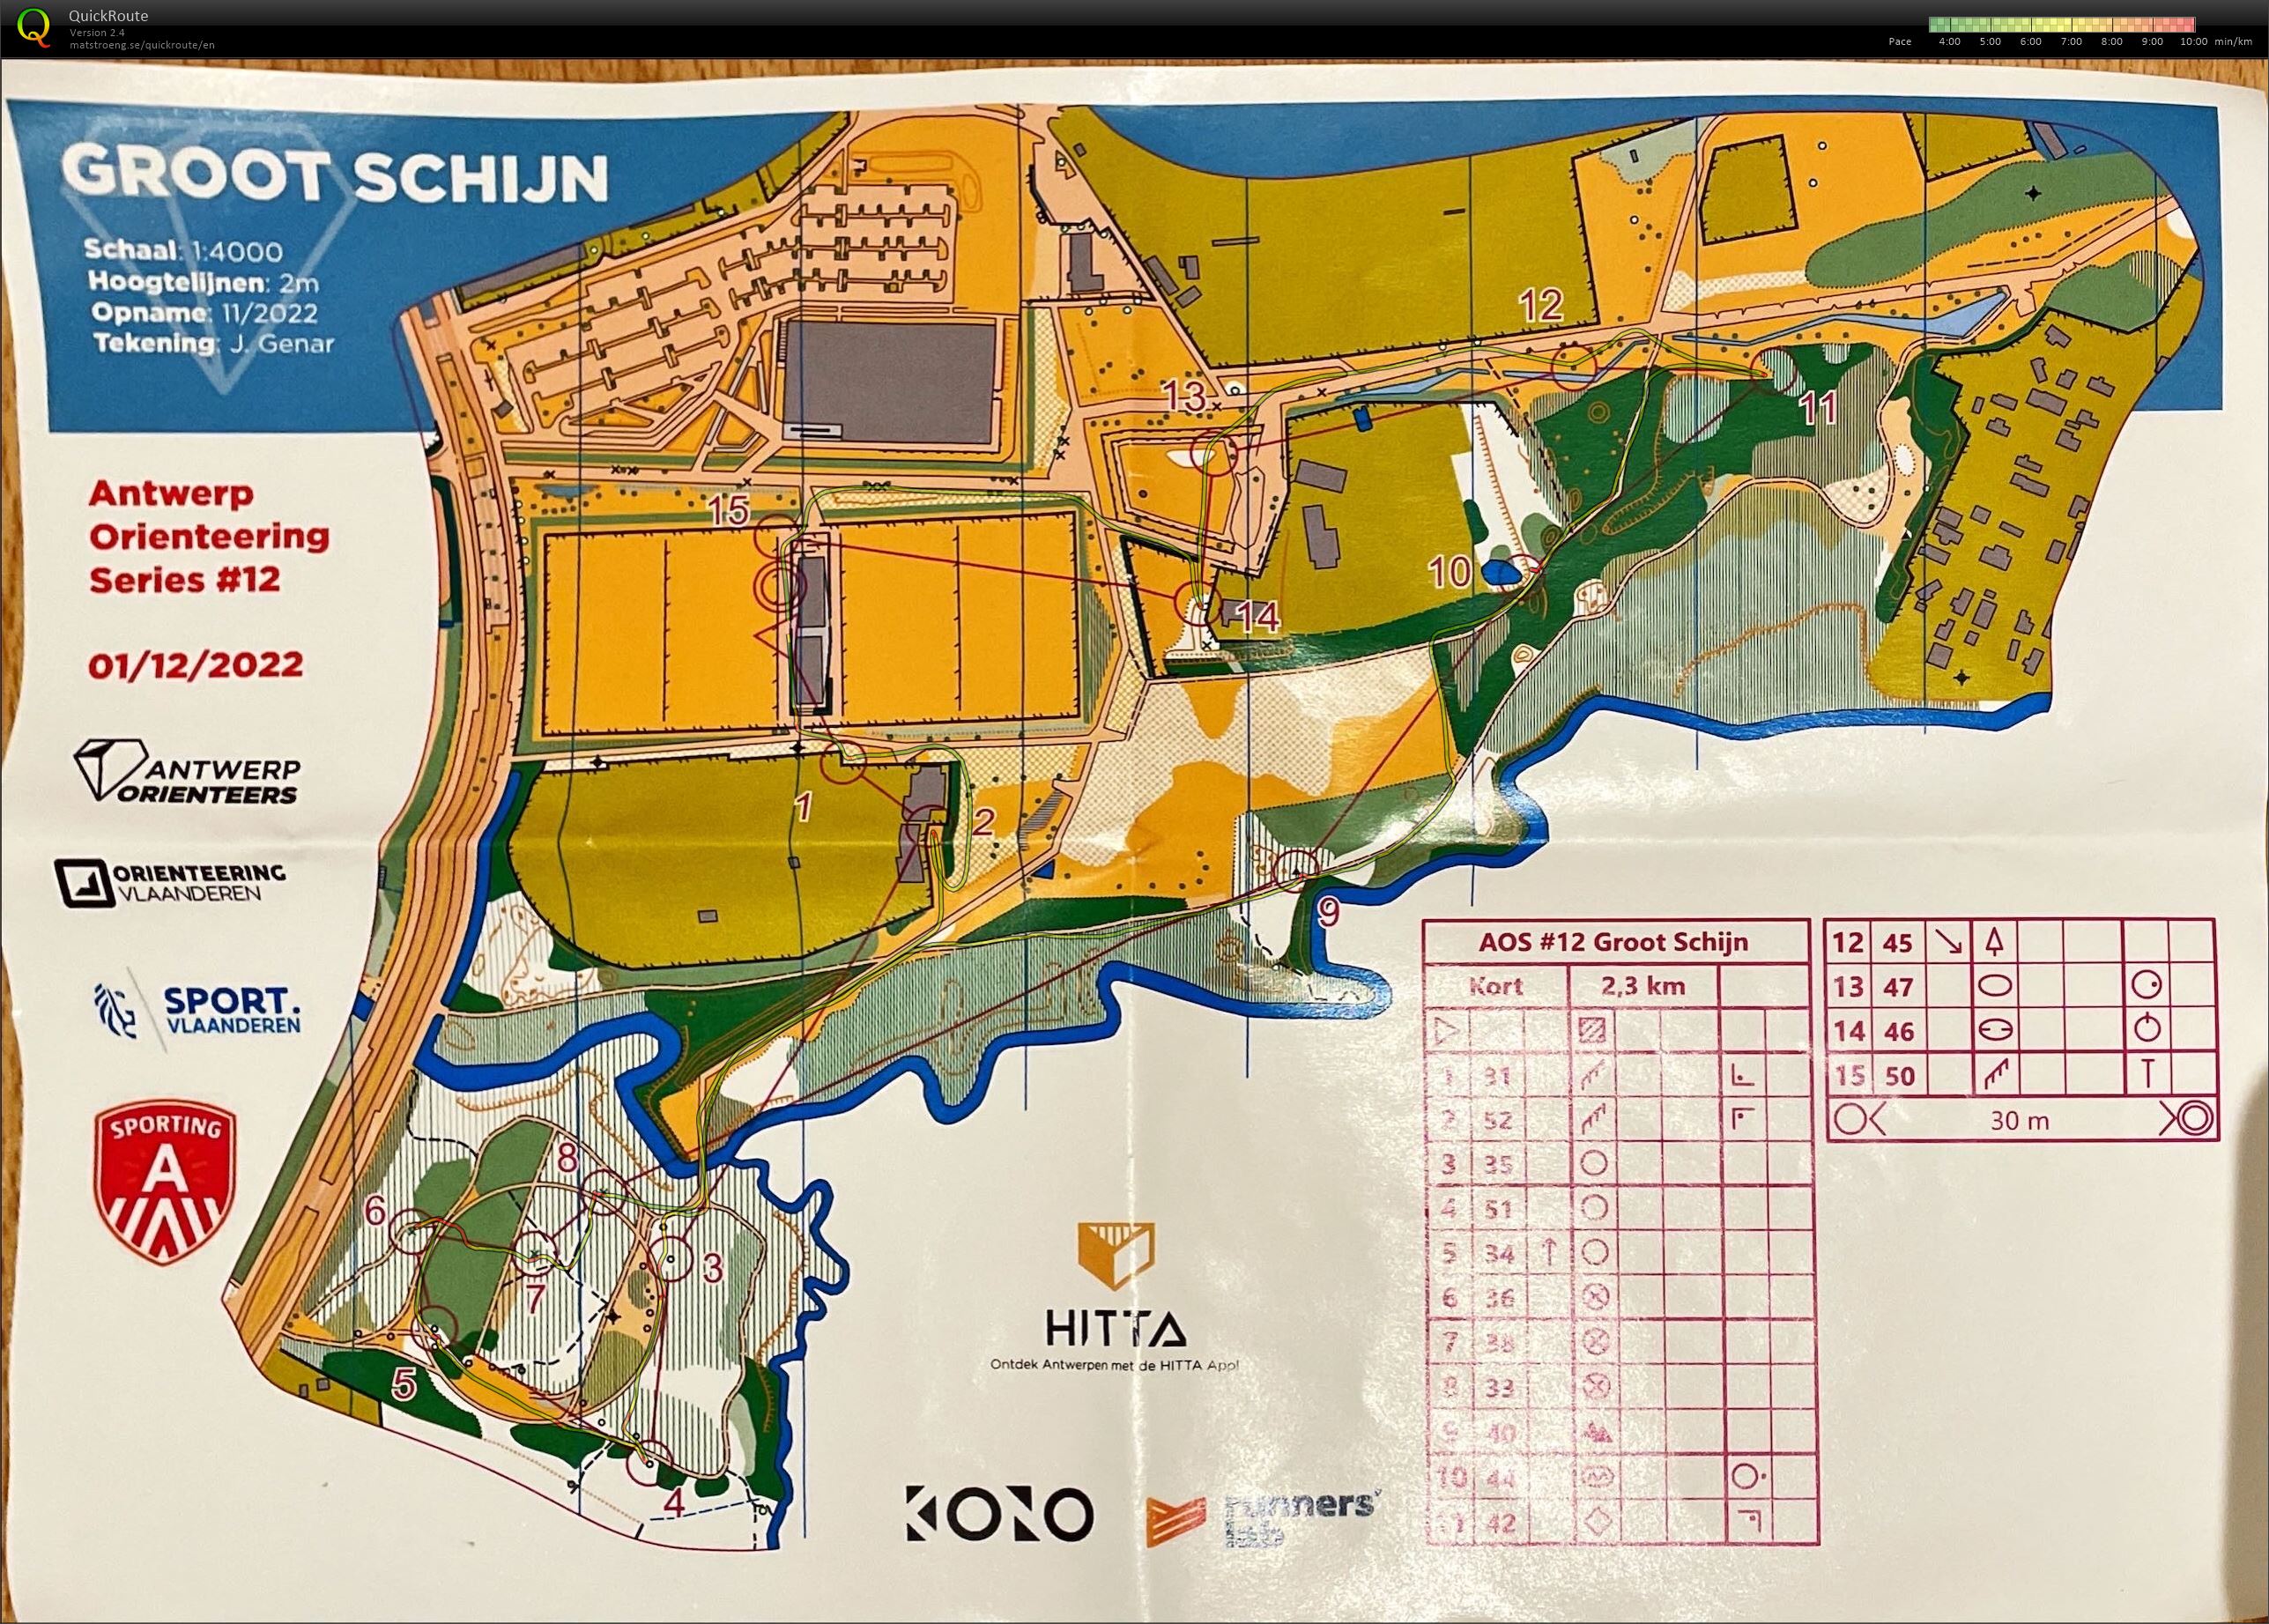 Antwerp Orienteering Series - Groot Schijn - Kort (01.12.2022)